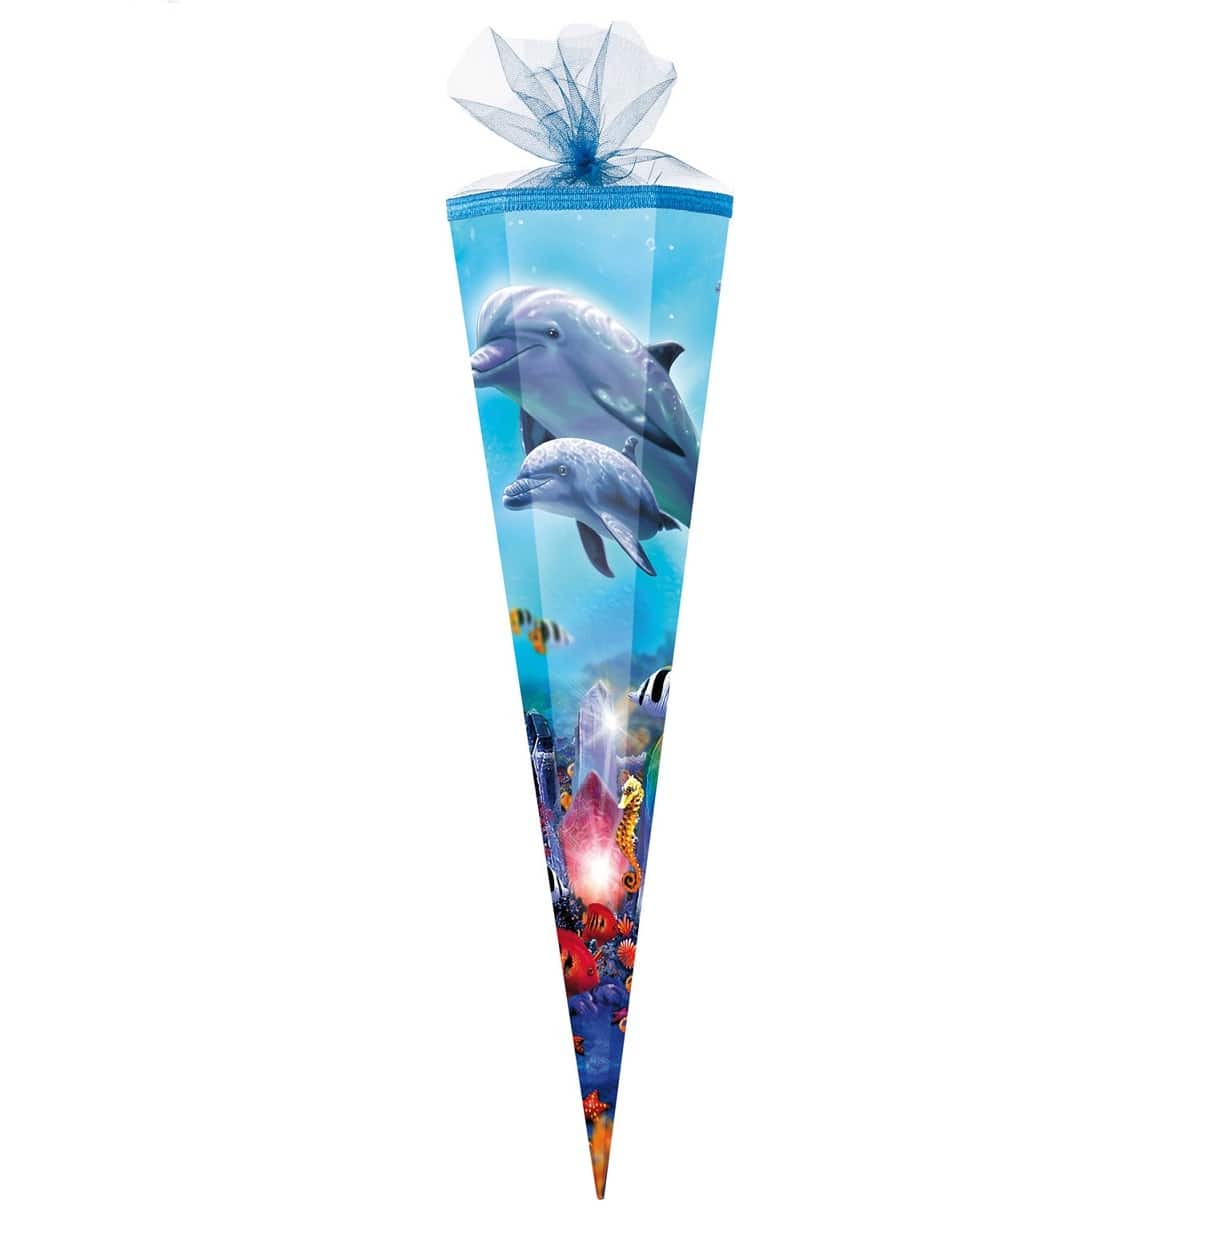 Schultüte 85 cm groß hellblau mit Meer Motiv Delfinen und Fischen